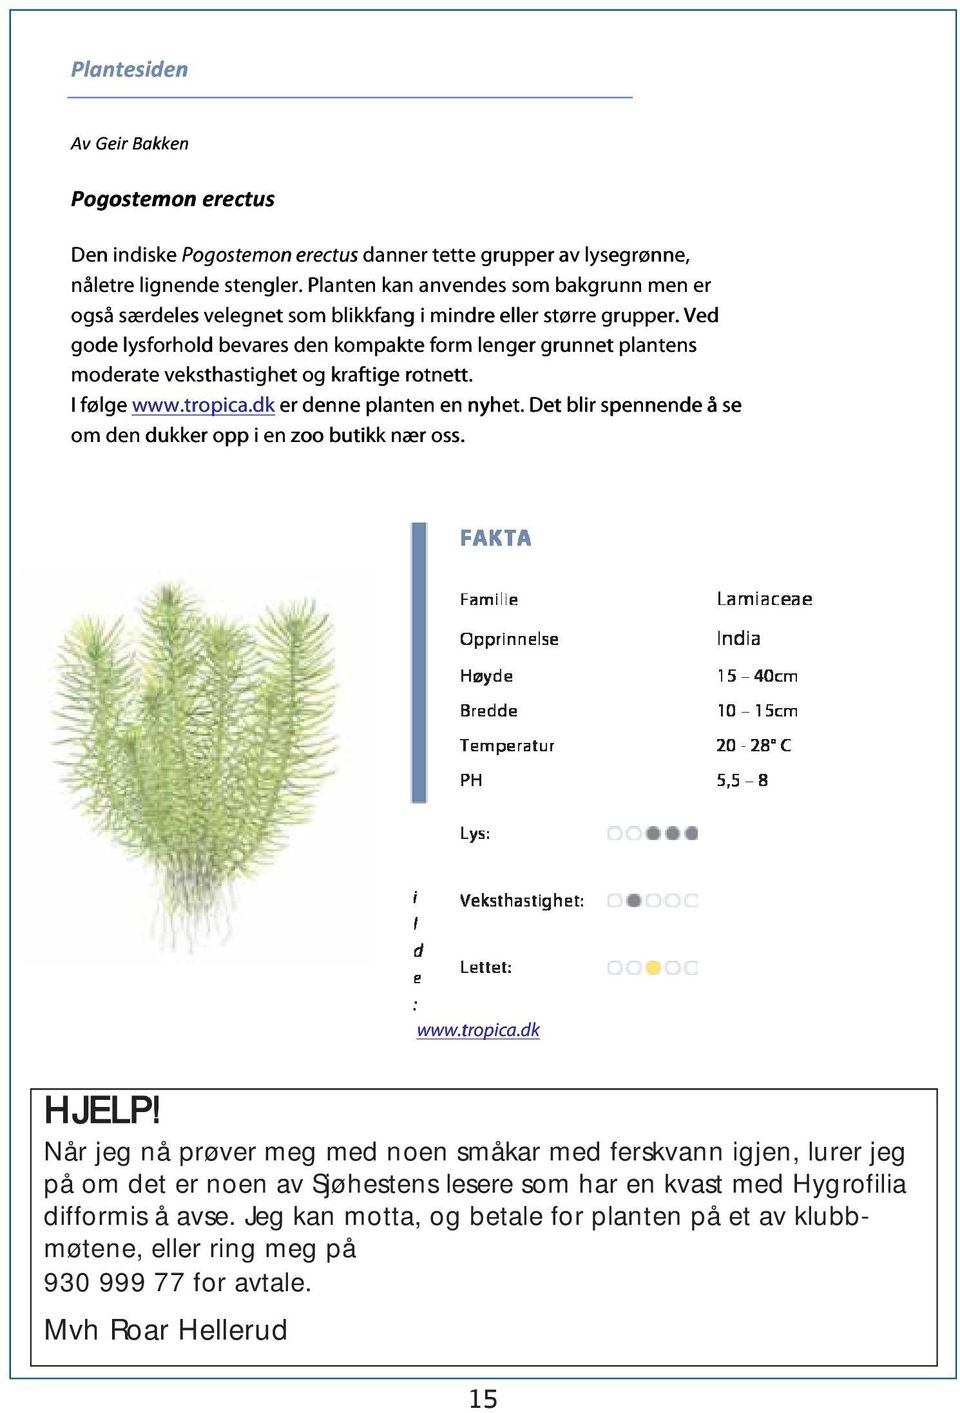 Ved gode lysforhold ld bevares den kompakte form lenger grunnet plantens moderate veksthastighet og kraftige rotnett. I følge www.tropica.dk er denne planten en nyhet.